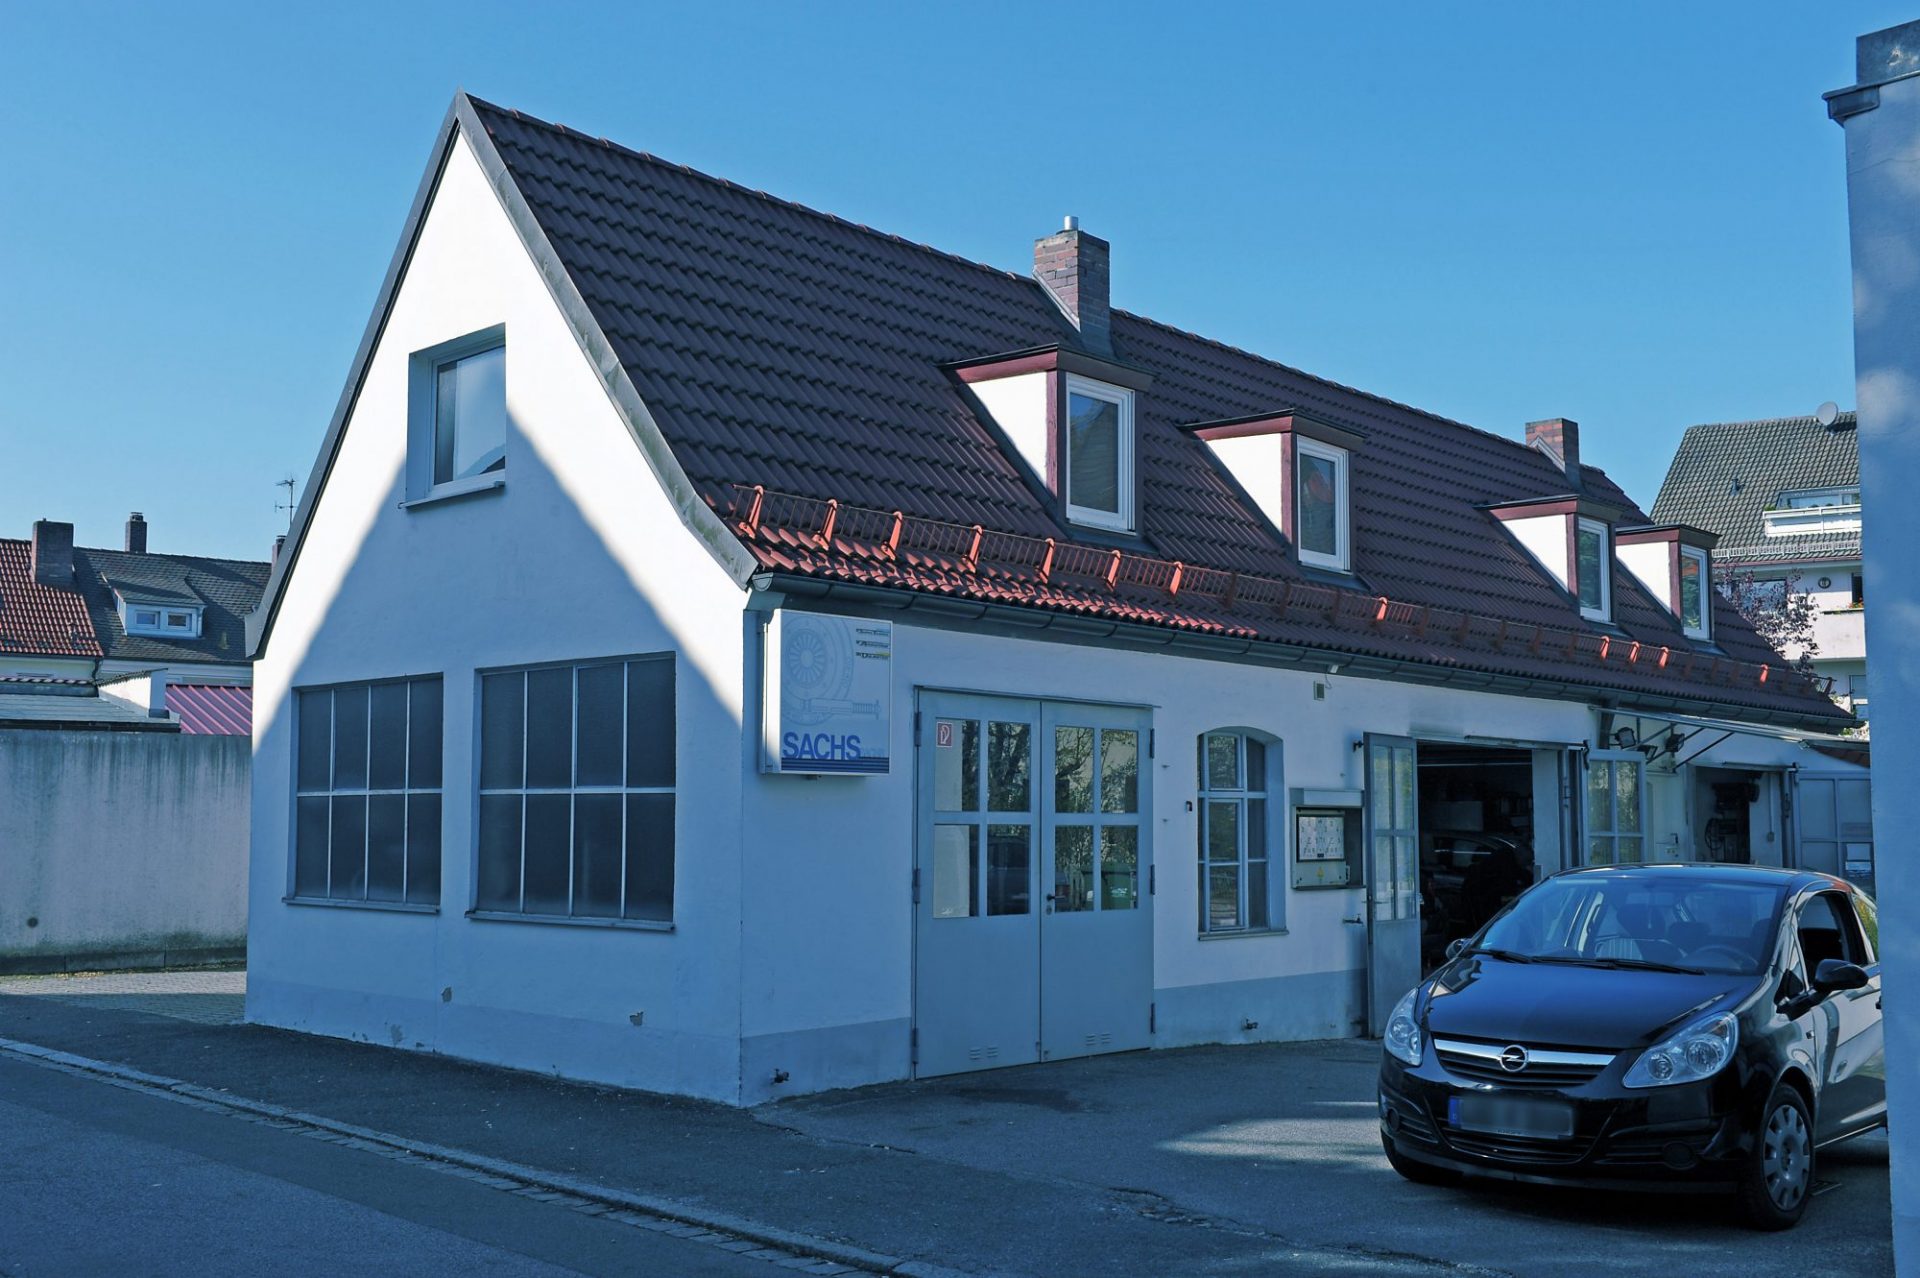 Werkstattgebäude von Auto Sluka, Röthenbach an der Pegnitz, Nürnberger Land